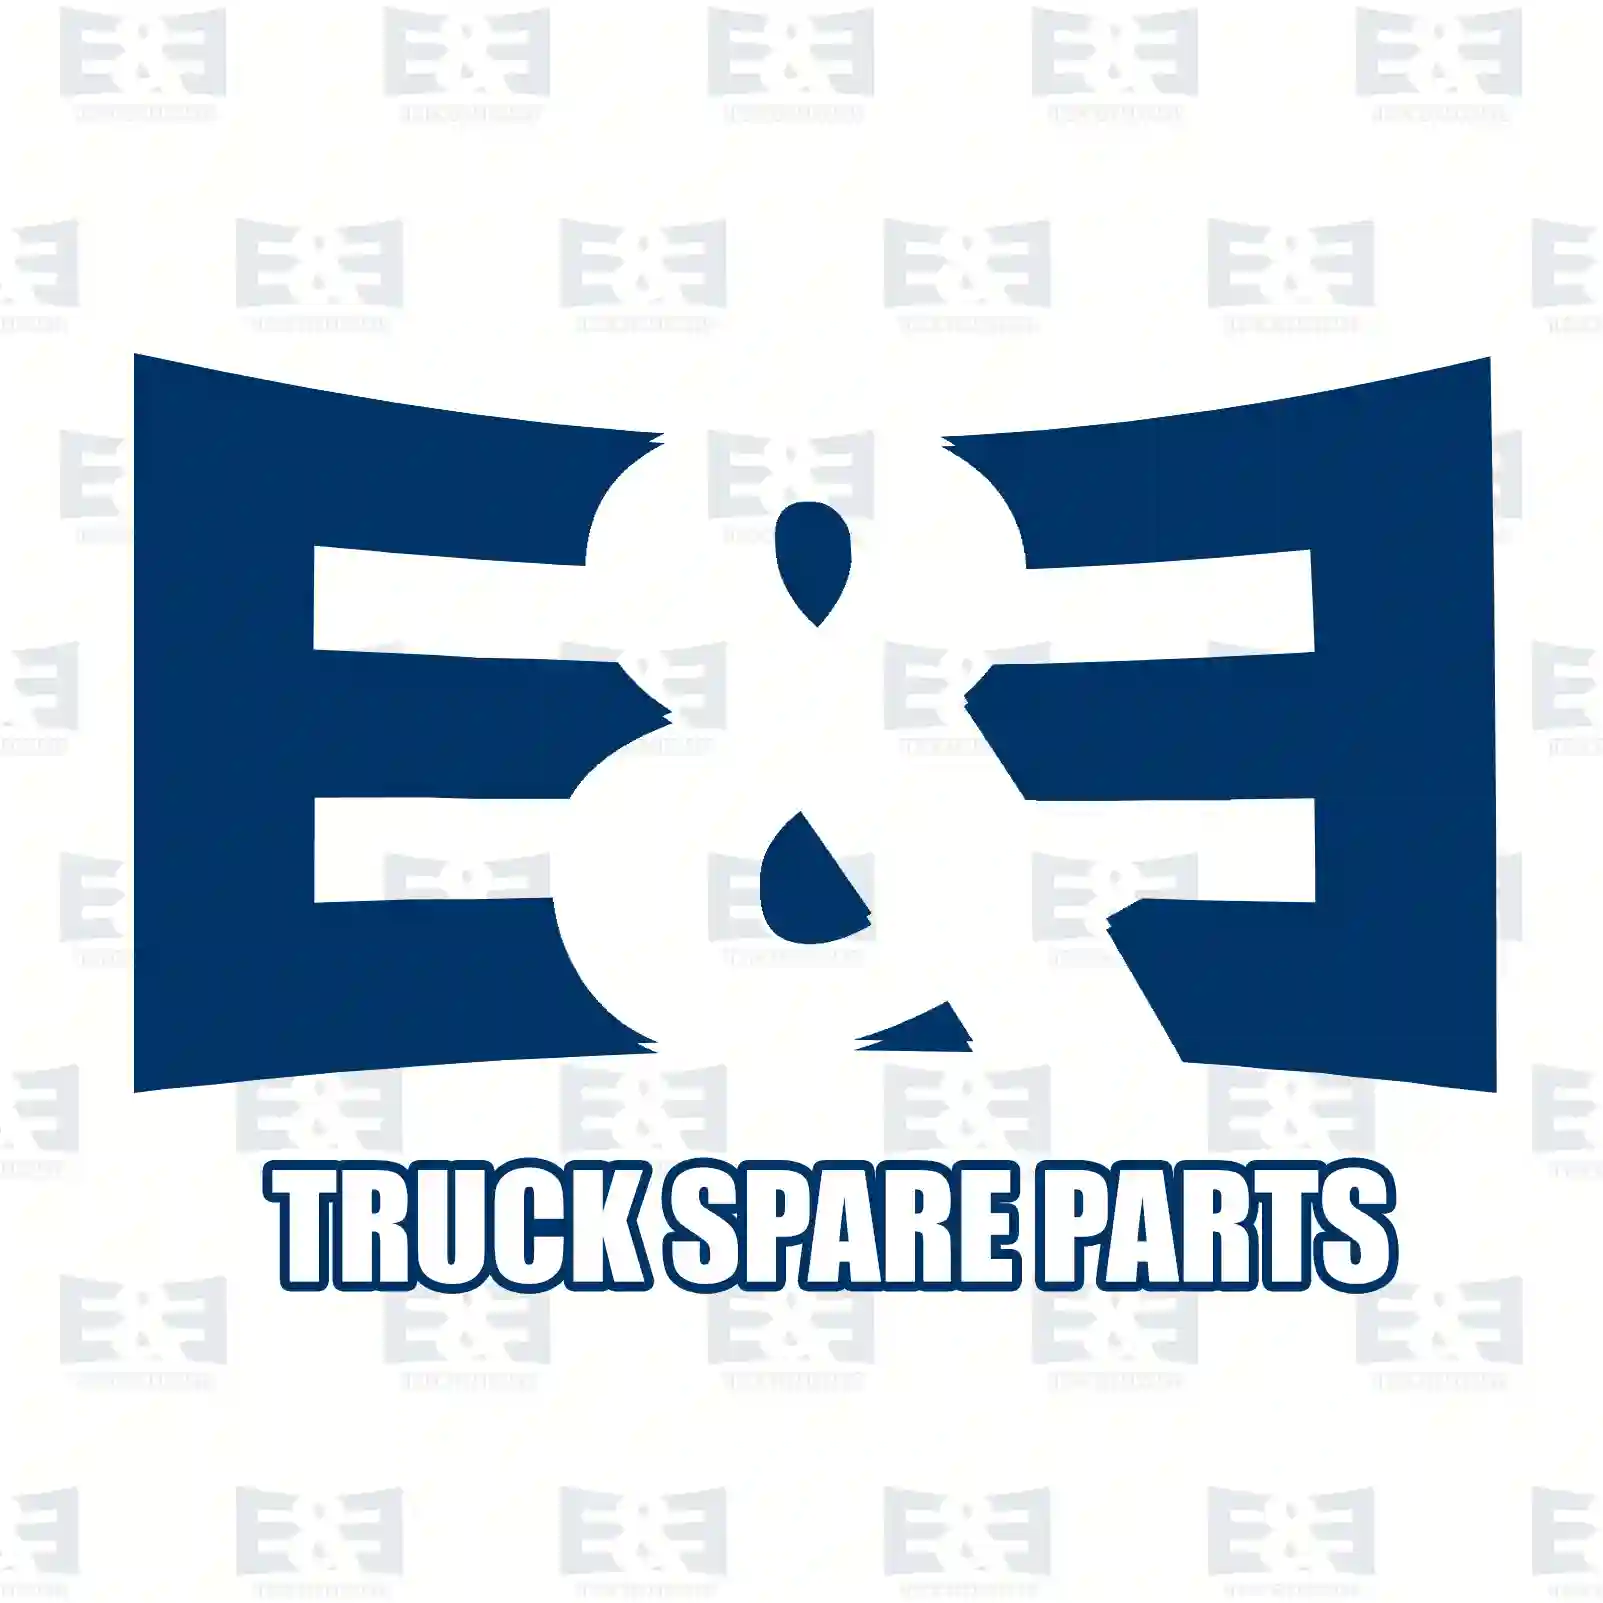 Exhaust brake, complete, 2E2208164, 1741589 ||  2E2208164 E&E Truck Spare Parts | Truck Spare Parts, Auotomotive Spare Parts Exhaust brake, complete, 2E2208164, 1741589 ||  2E2208164 E&E Truck Spare Parts | Truck Spare Parts, Auotomotive Spare Parts